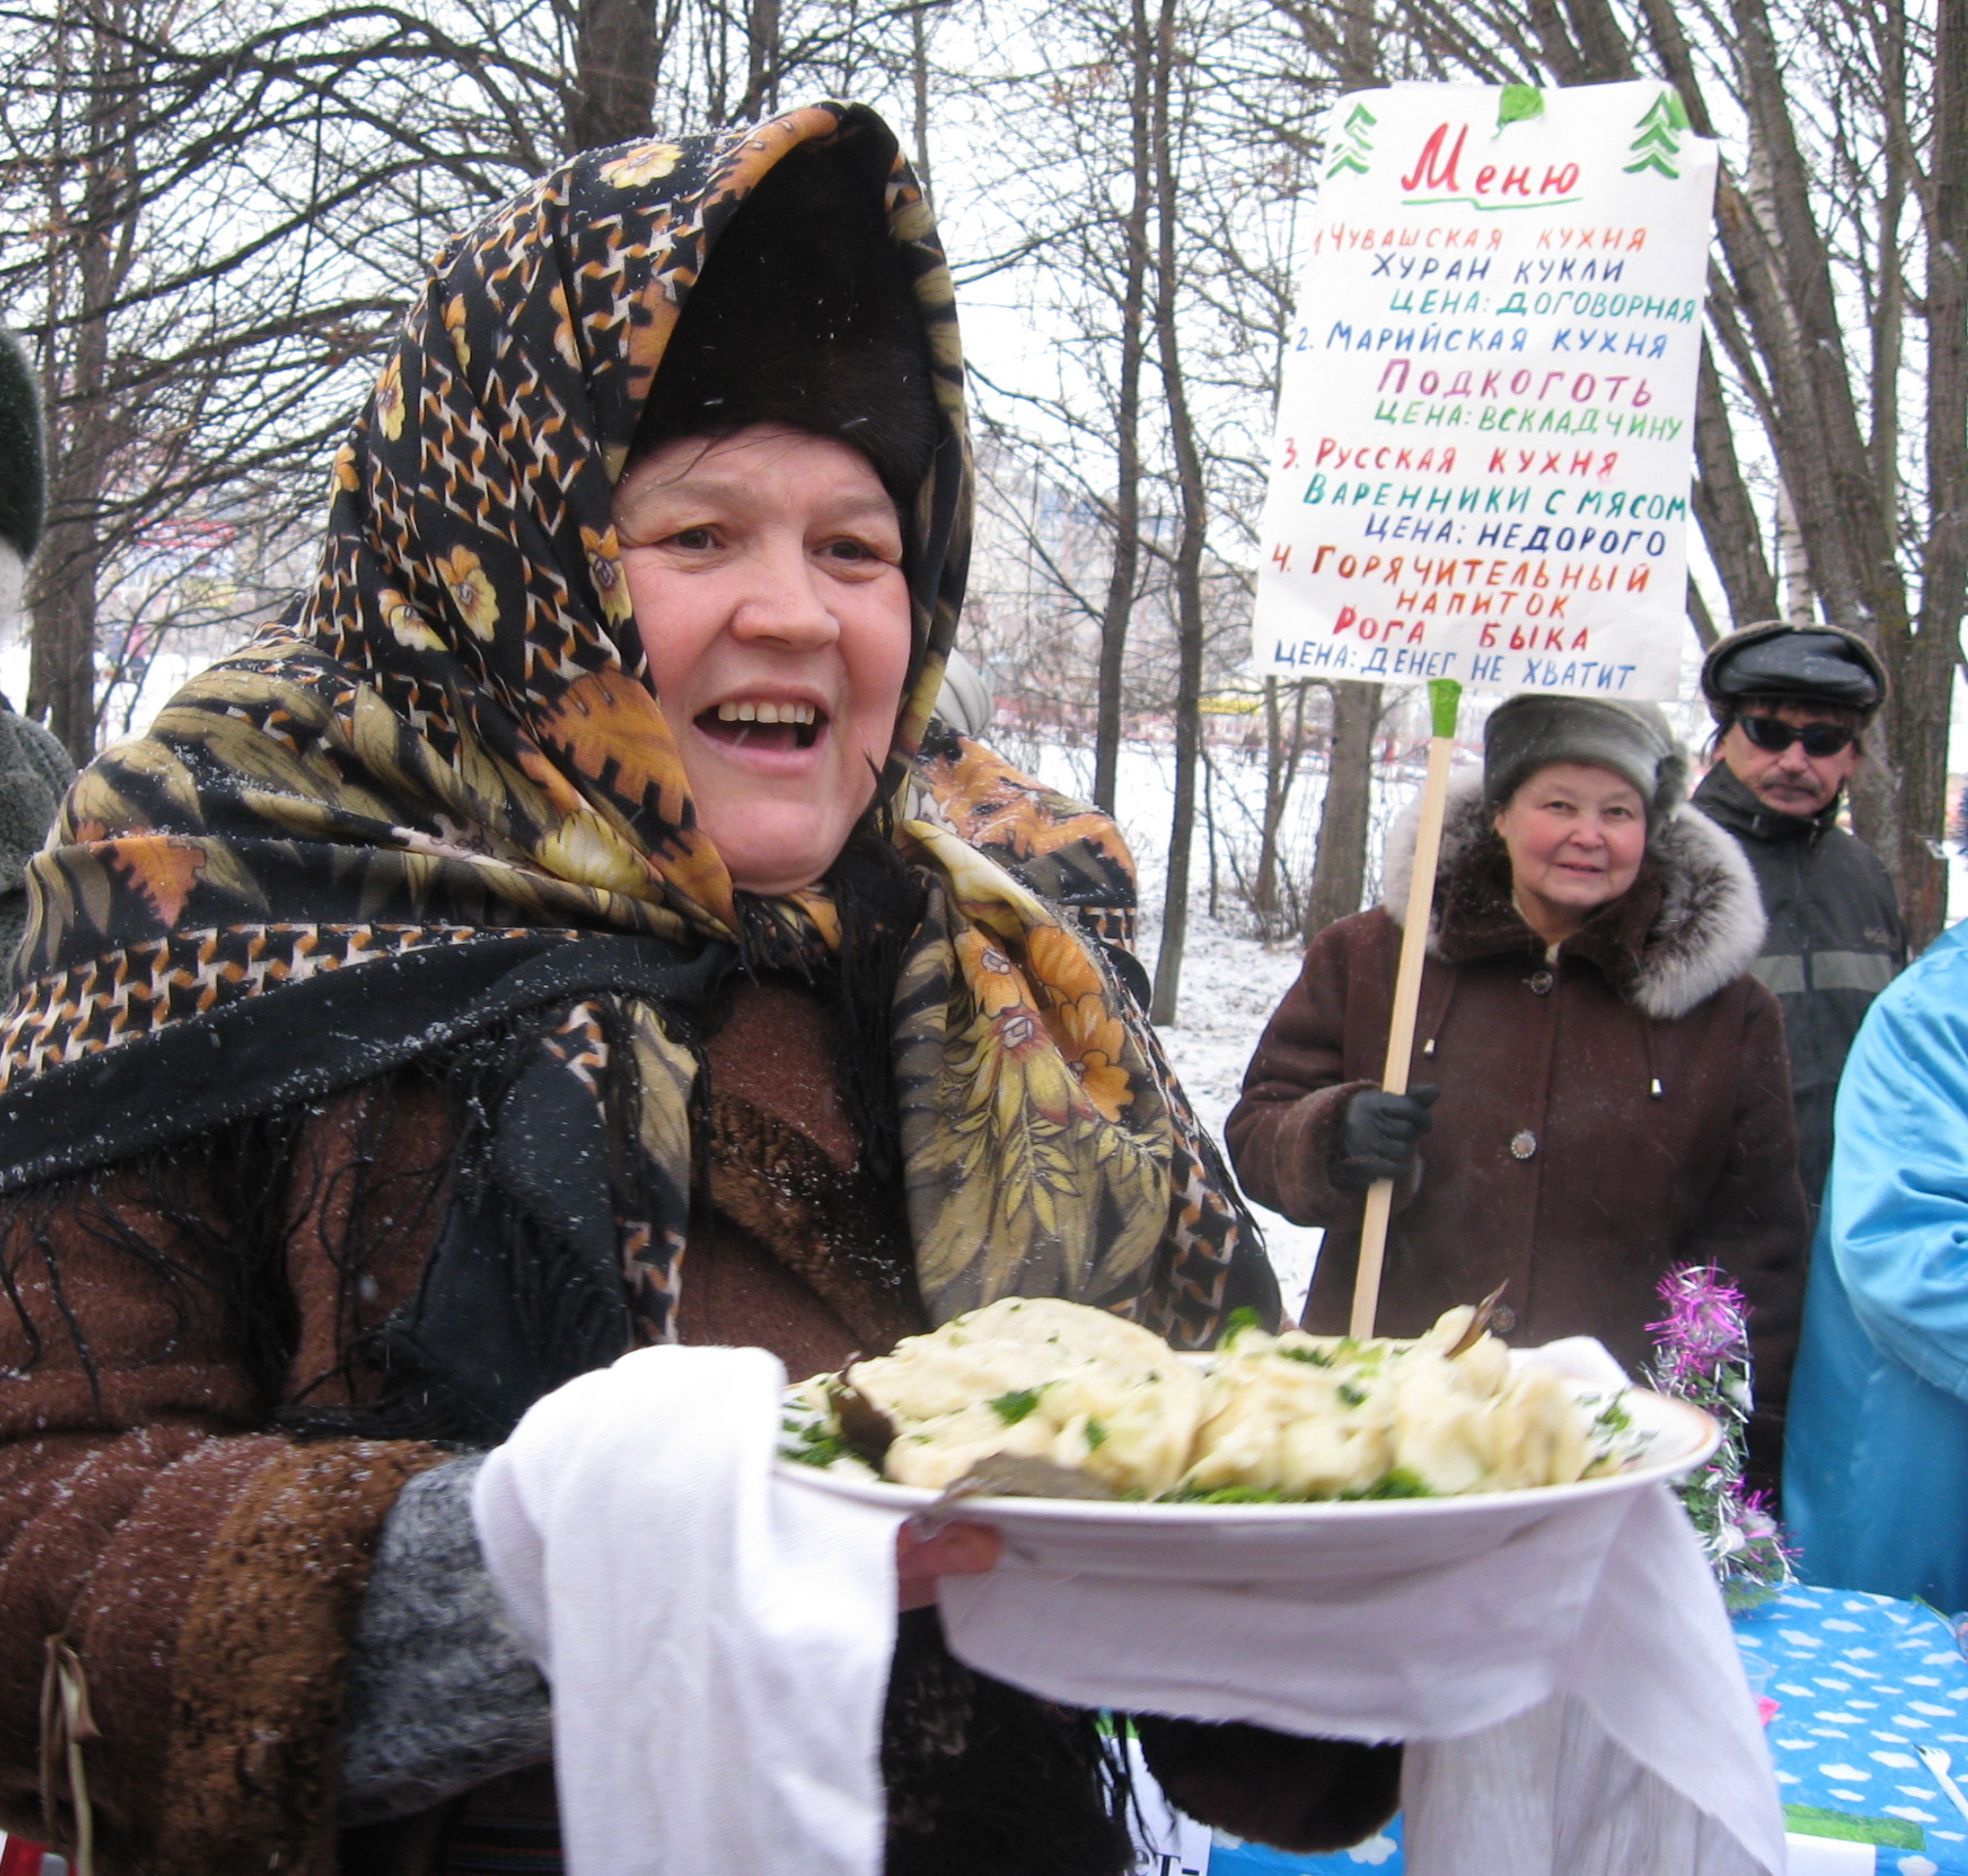    13:56 Впервые в Московском районе г. Чебоксары  состоялся конкурс домашней кухни «Эх, пельмешечки, пельмени!»